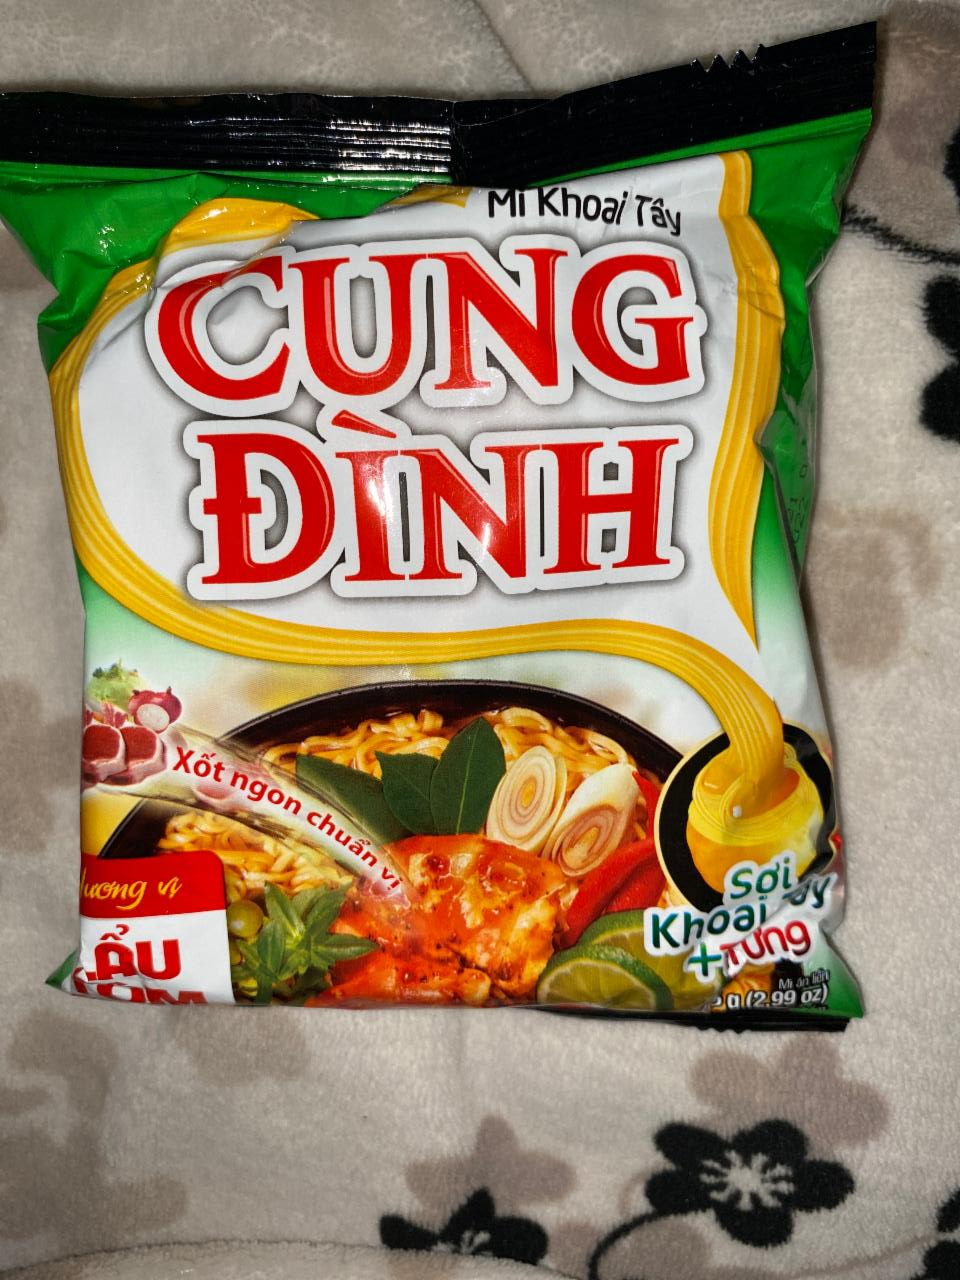 Фото - лапша быстрого приготовления креветка Cung Dinh